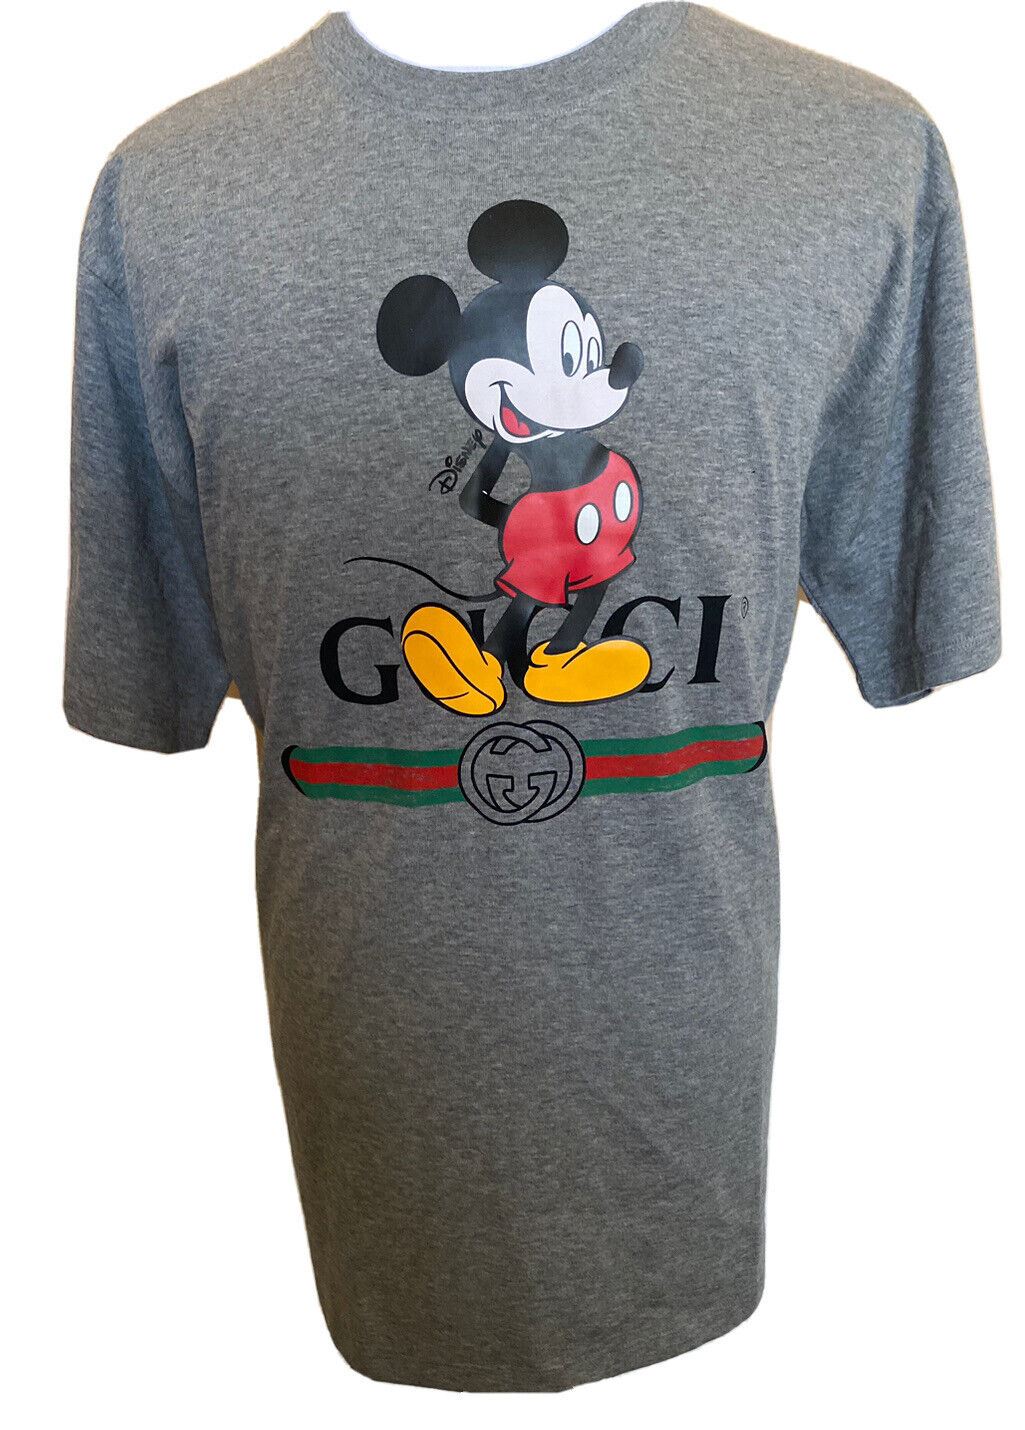 Neu mit Etikett: Gucci Mickey Mouse Graues T-Shirt aus Baumwolljersey, Größe M (Übergröße) 565806